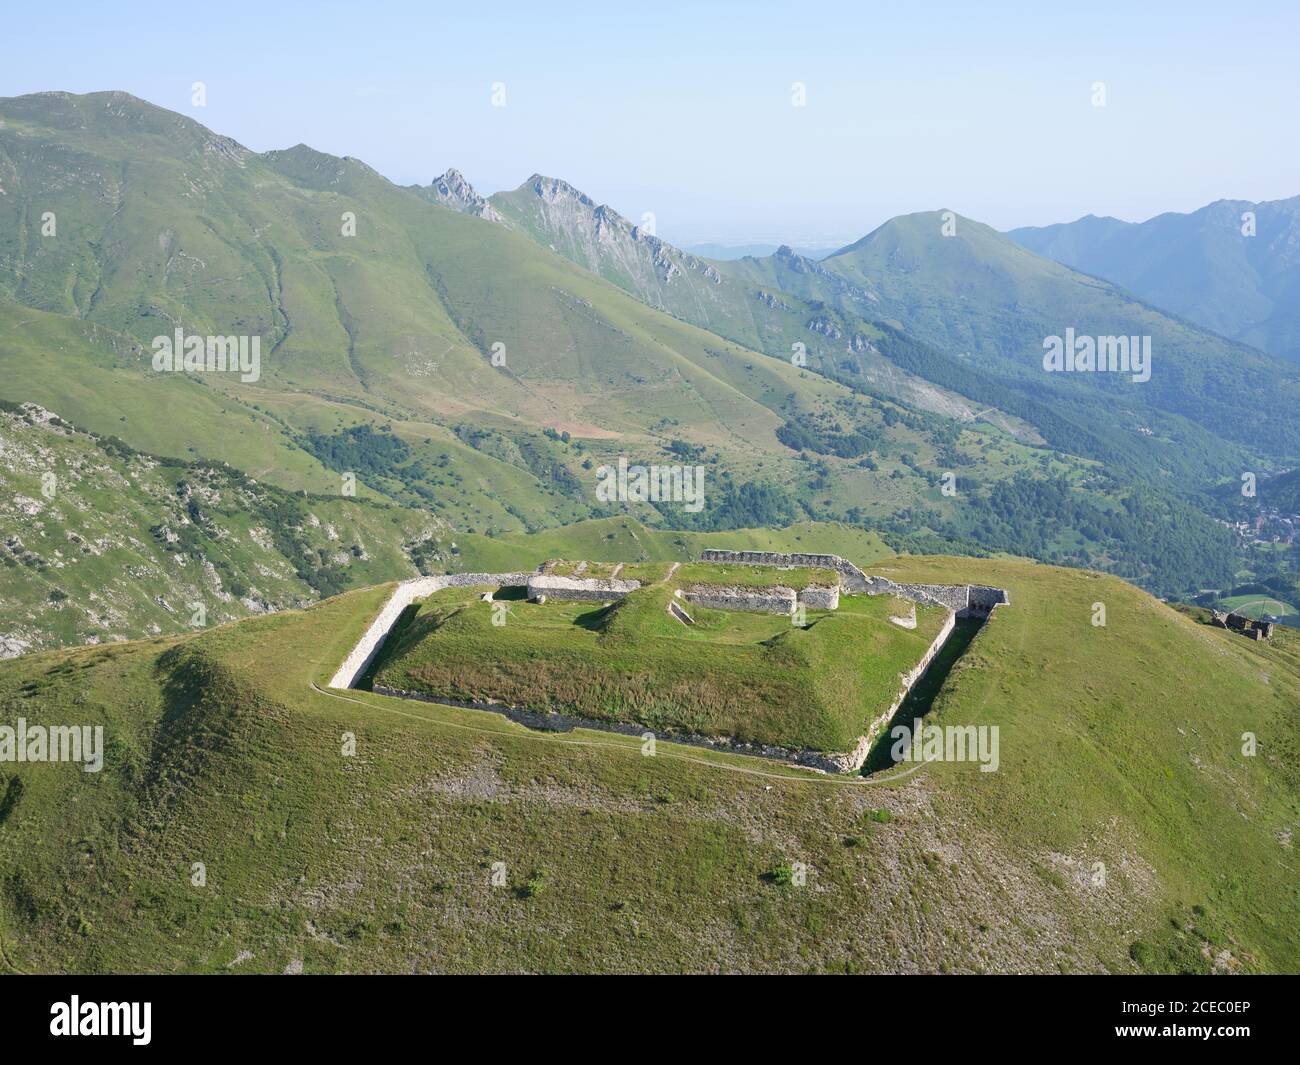 VISTA AEREA. Forte Pernante, una vecchia fortificazione militare sopra col de Tende. Tende, Alpi Marittime, Francia. Foto Stock